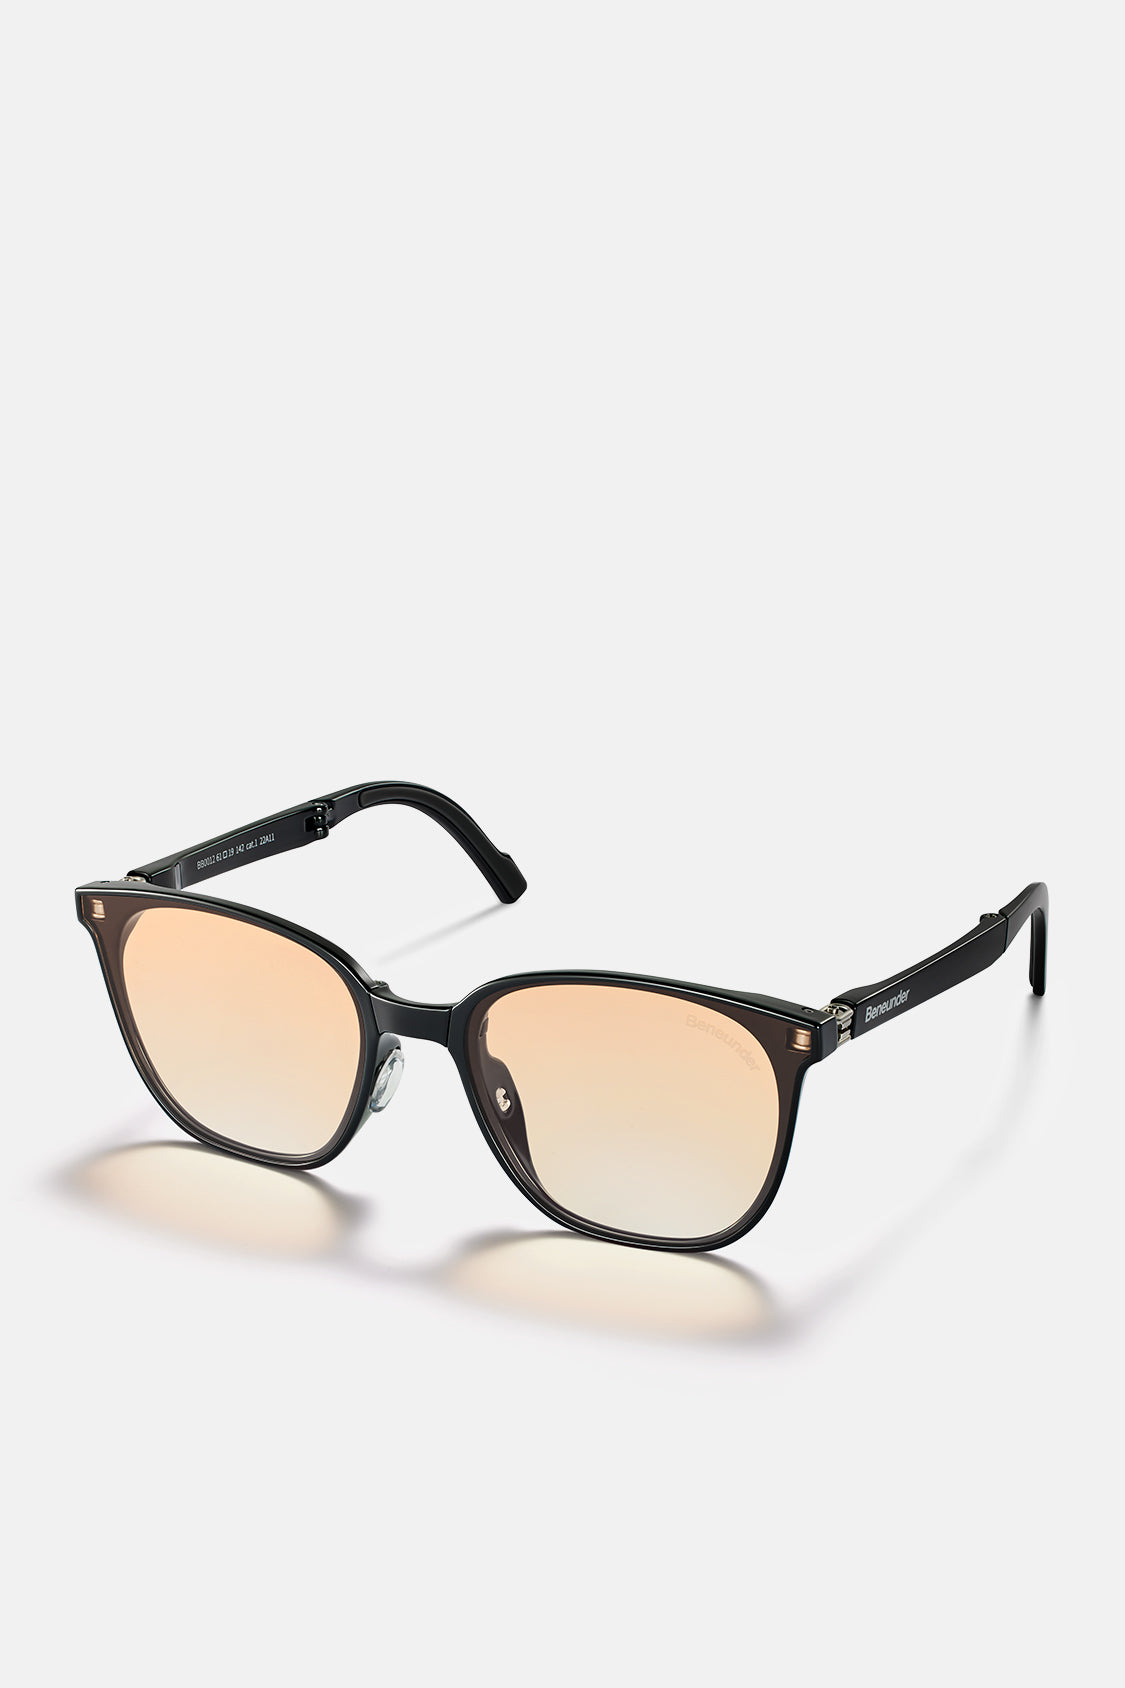 beneunder men's neonspace polarized folding sunglasses shades #color_sunset orange